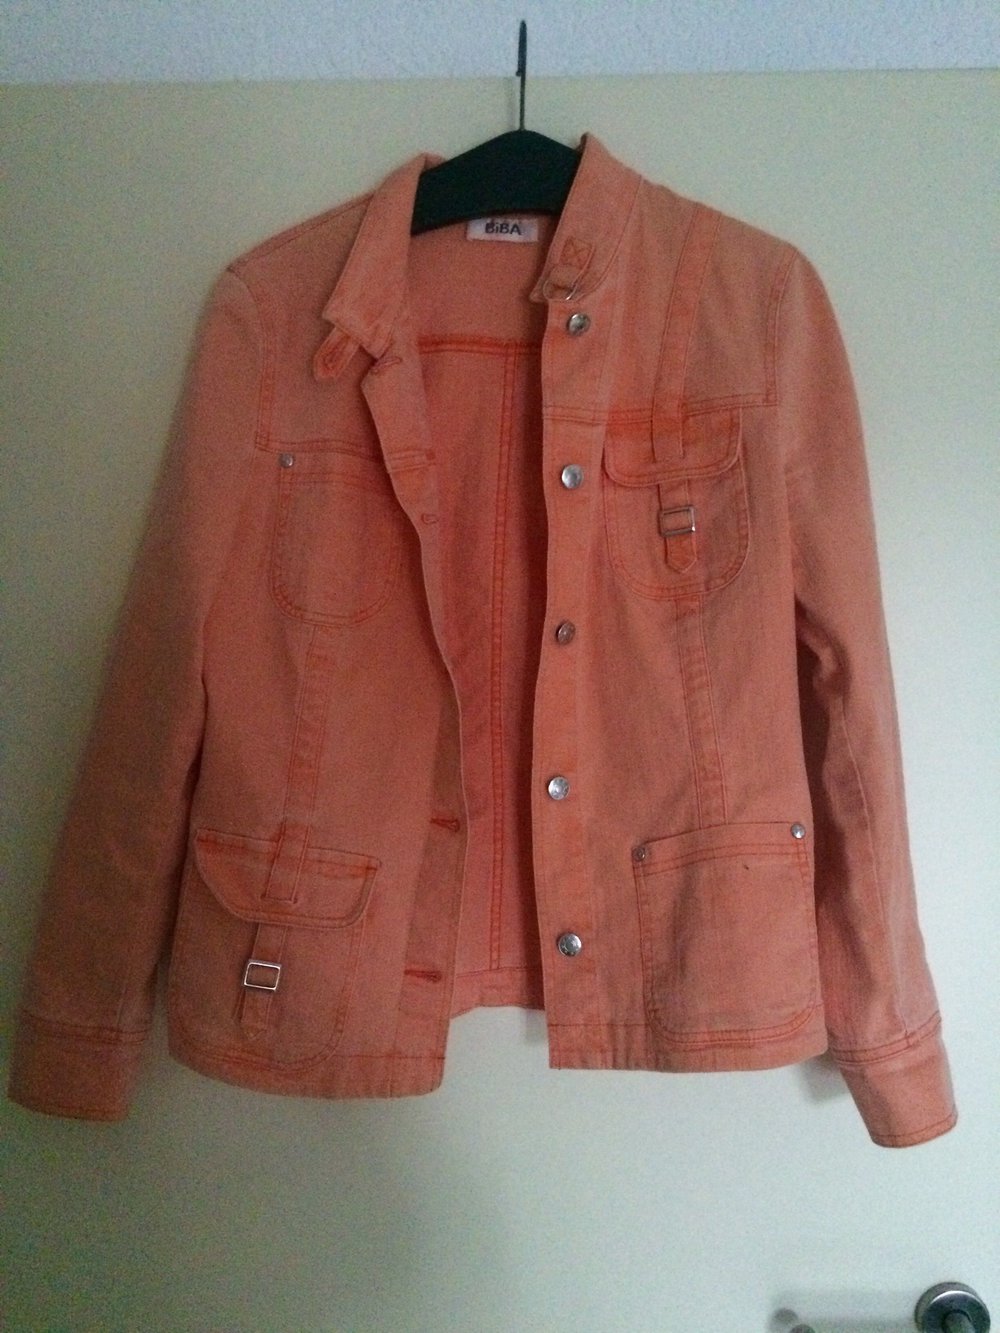 Pastell orangene BIBA Jacke im Jeans-Look